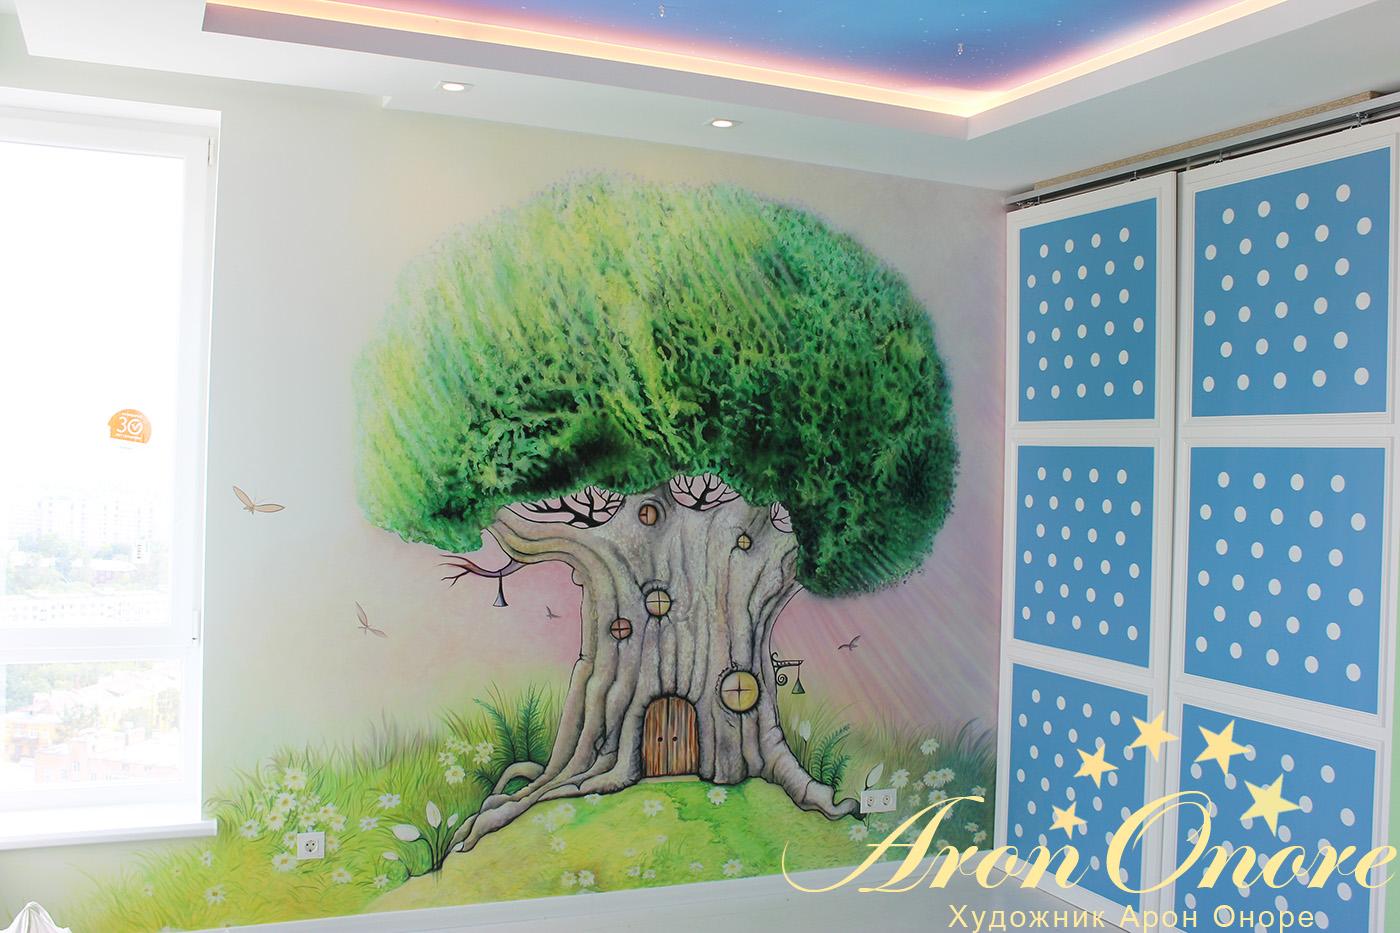 Красивая роспись стен в сказочном стиле в детской комнате